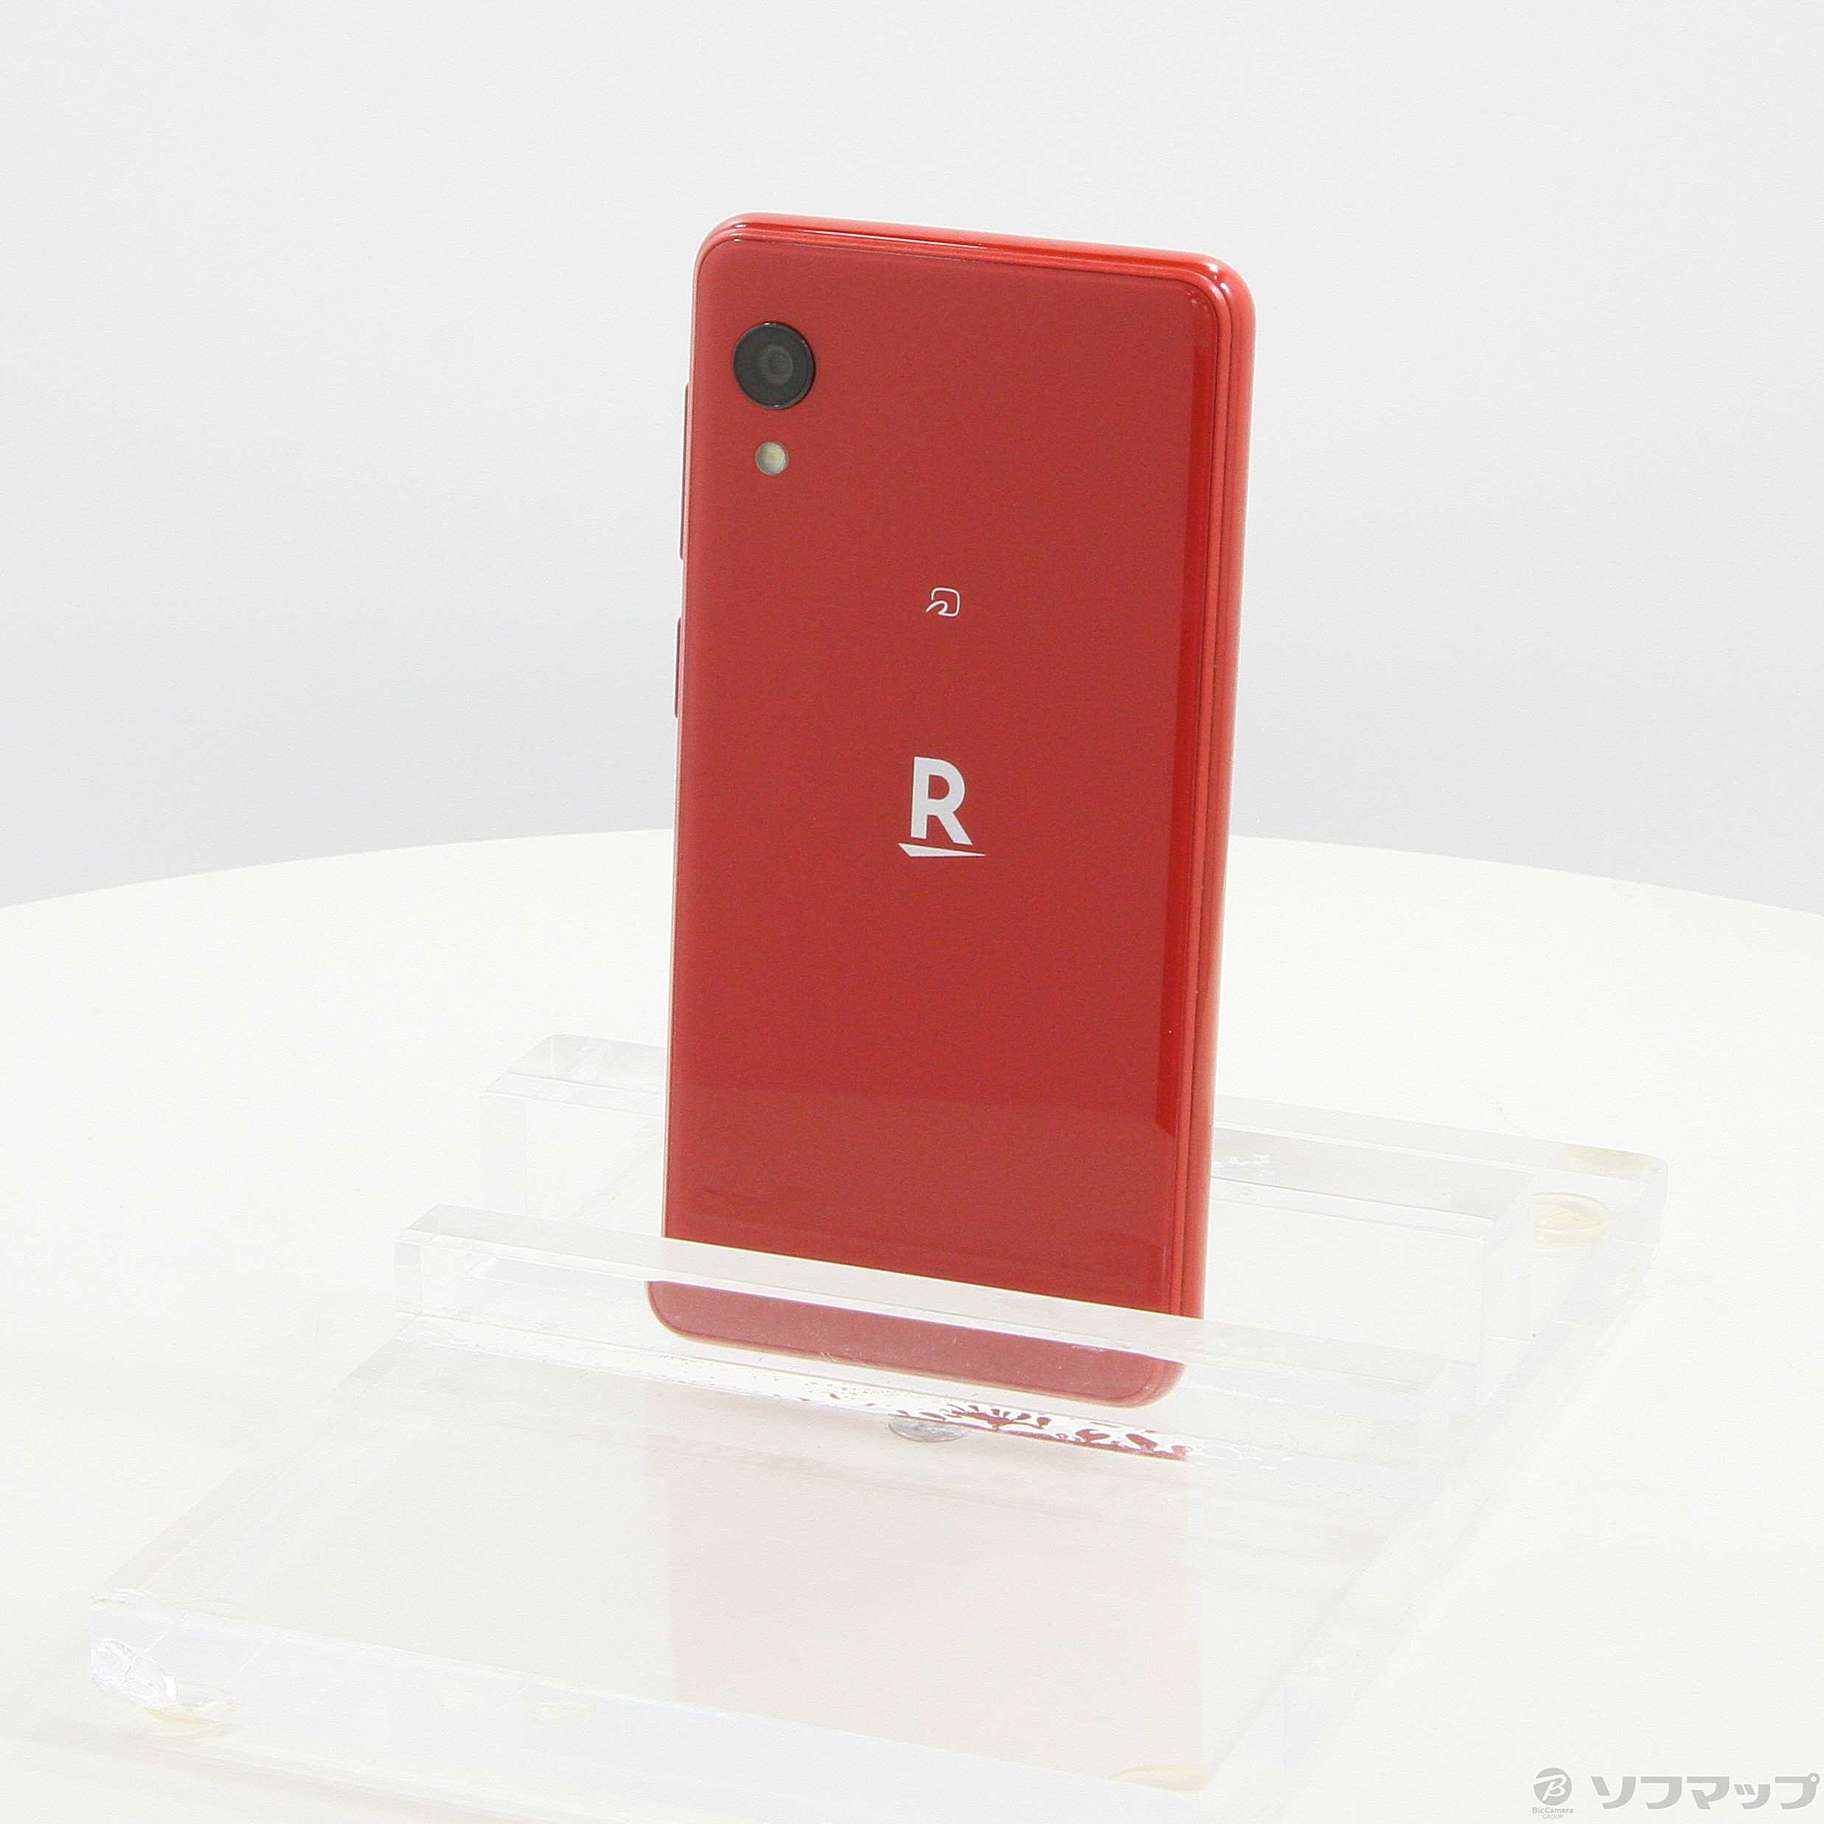 【ほぼ新品】Rakuten Mini クリムゾンレッド 32 GB SIMフリー